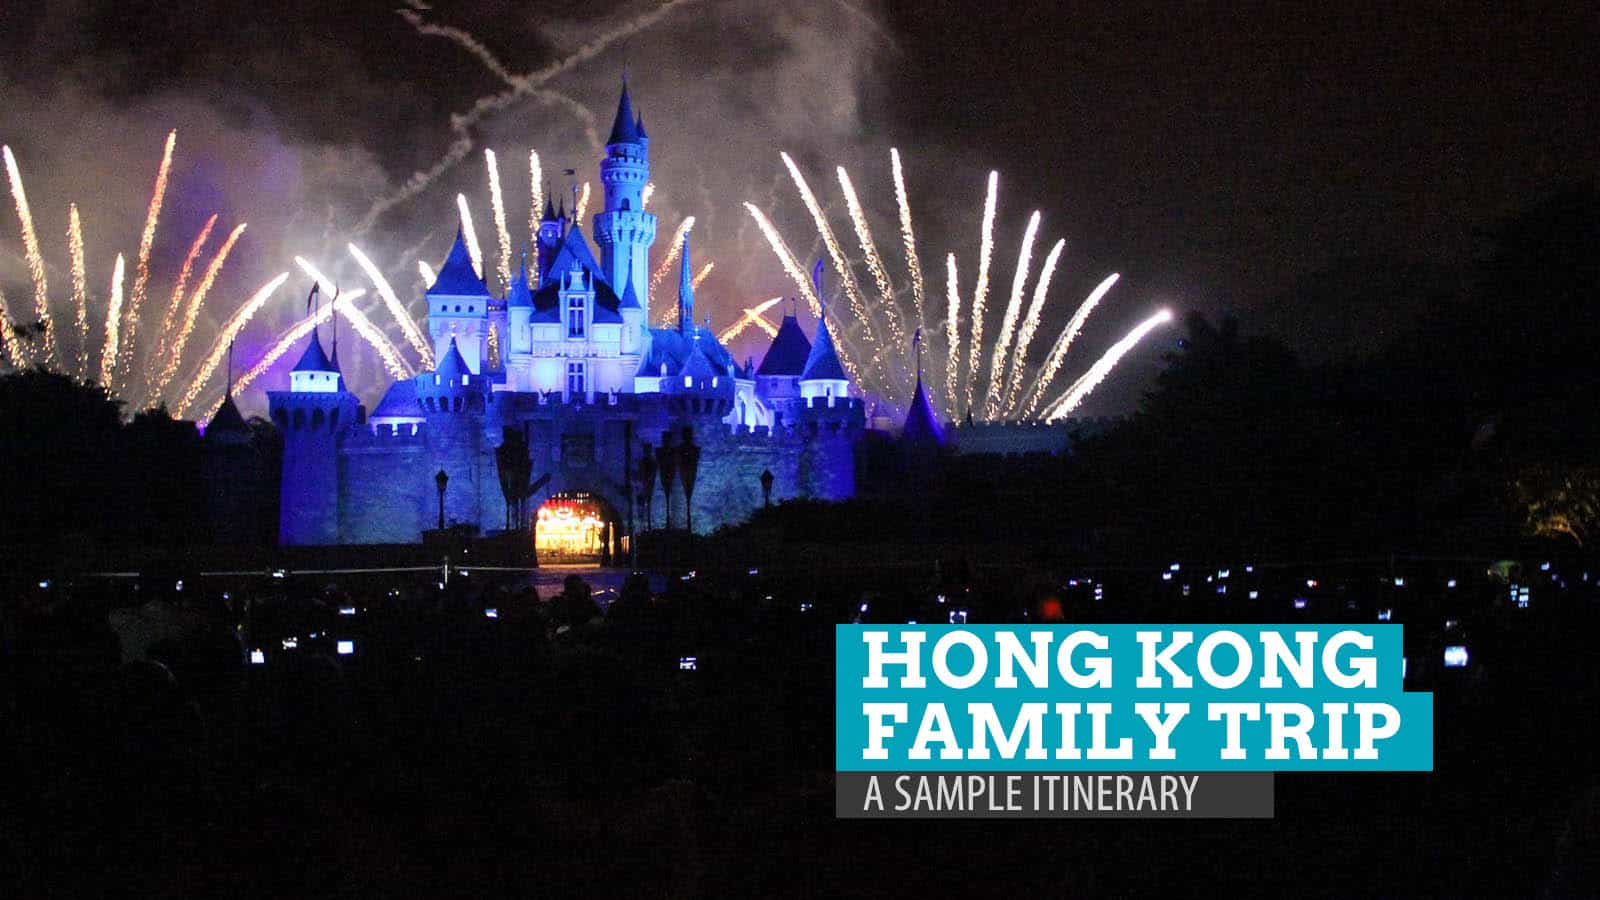 Hong Kong Family Trip: Summary, Itinerary and Budget